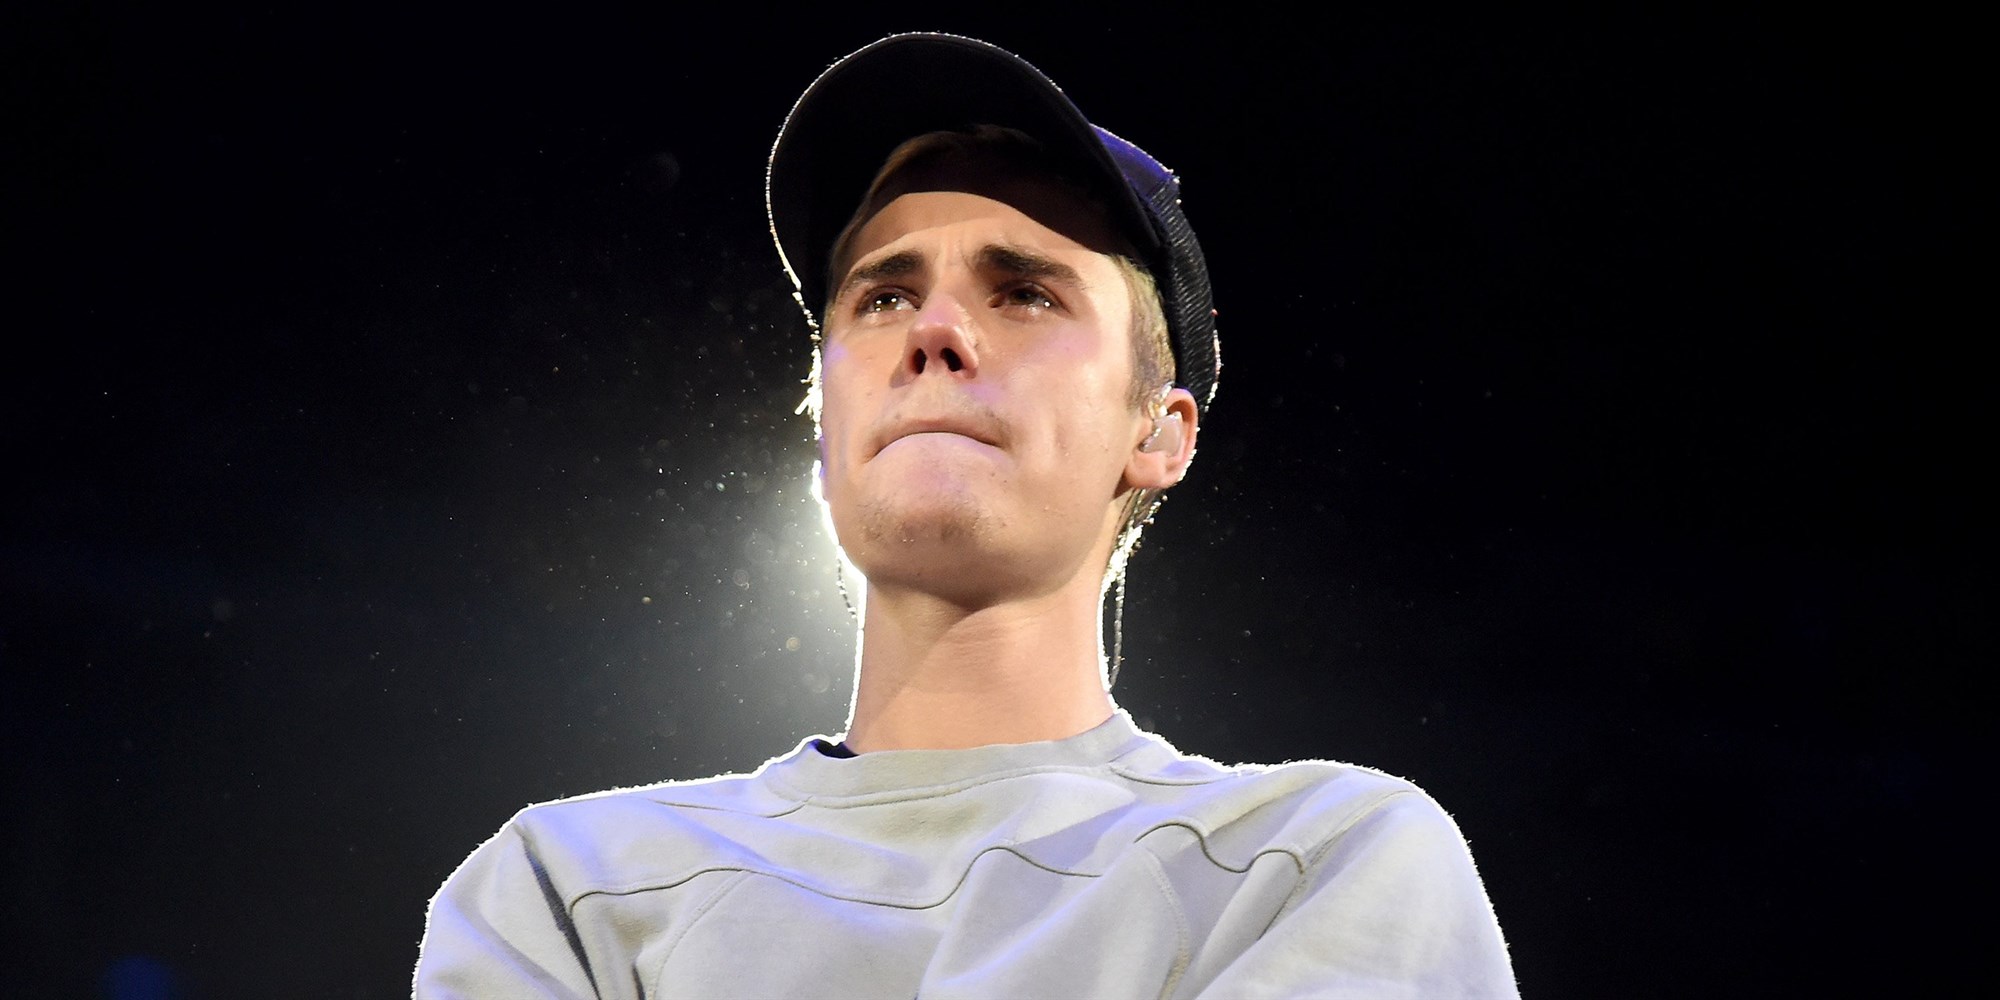 Justin Bieber Reveals He Has Been Battling With Lyme Disease